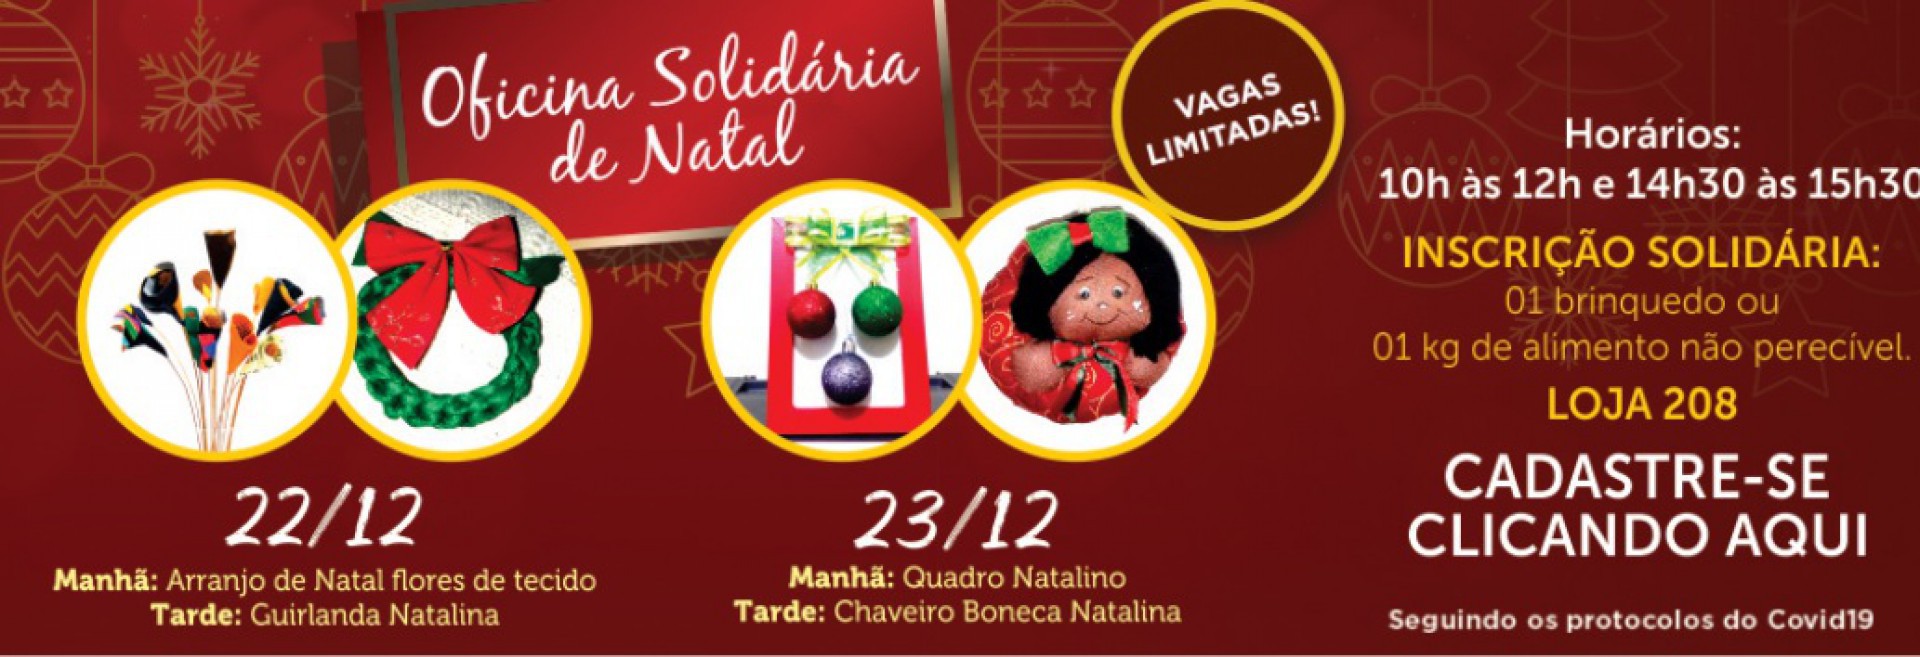 Serão oferecidas diversas atividades decorativas natalinas - Divulgação